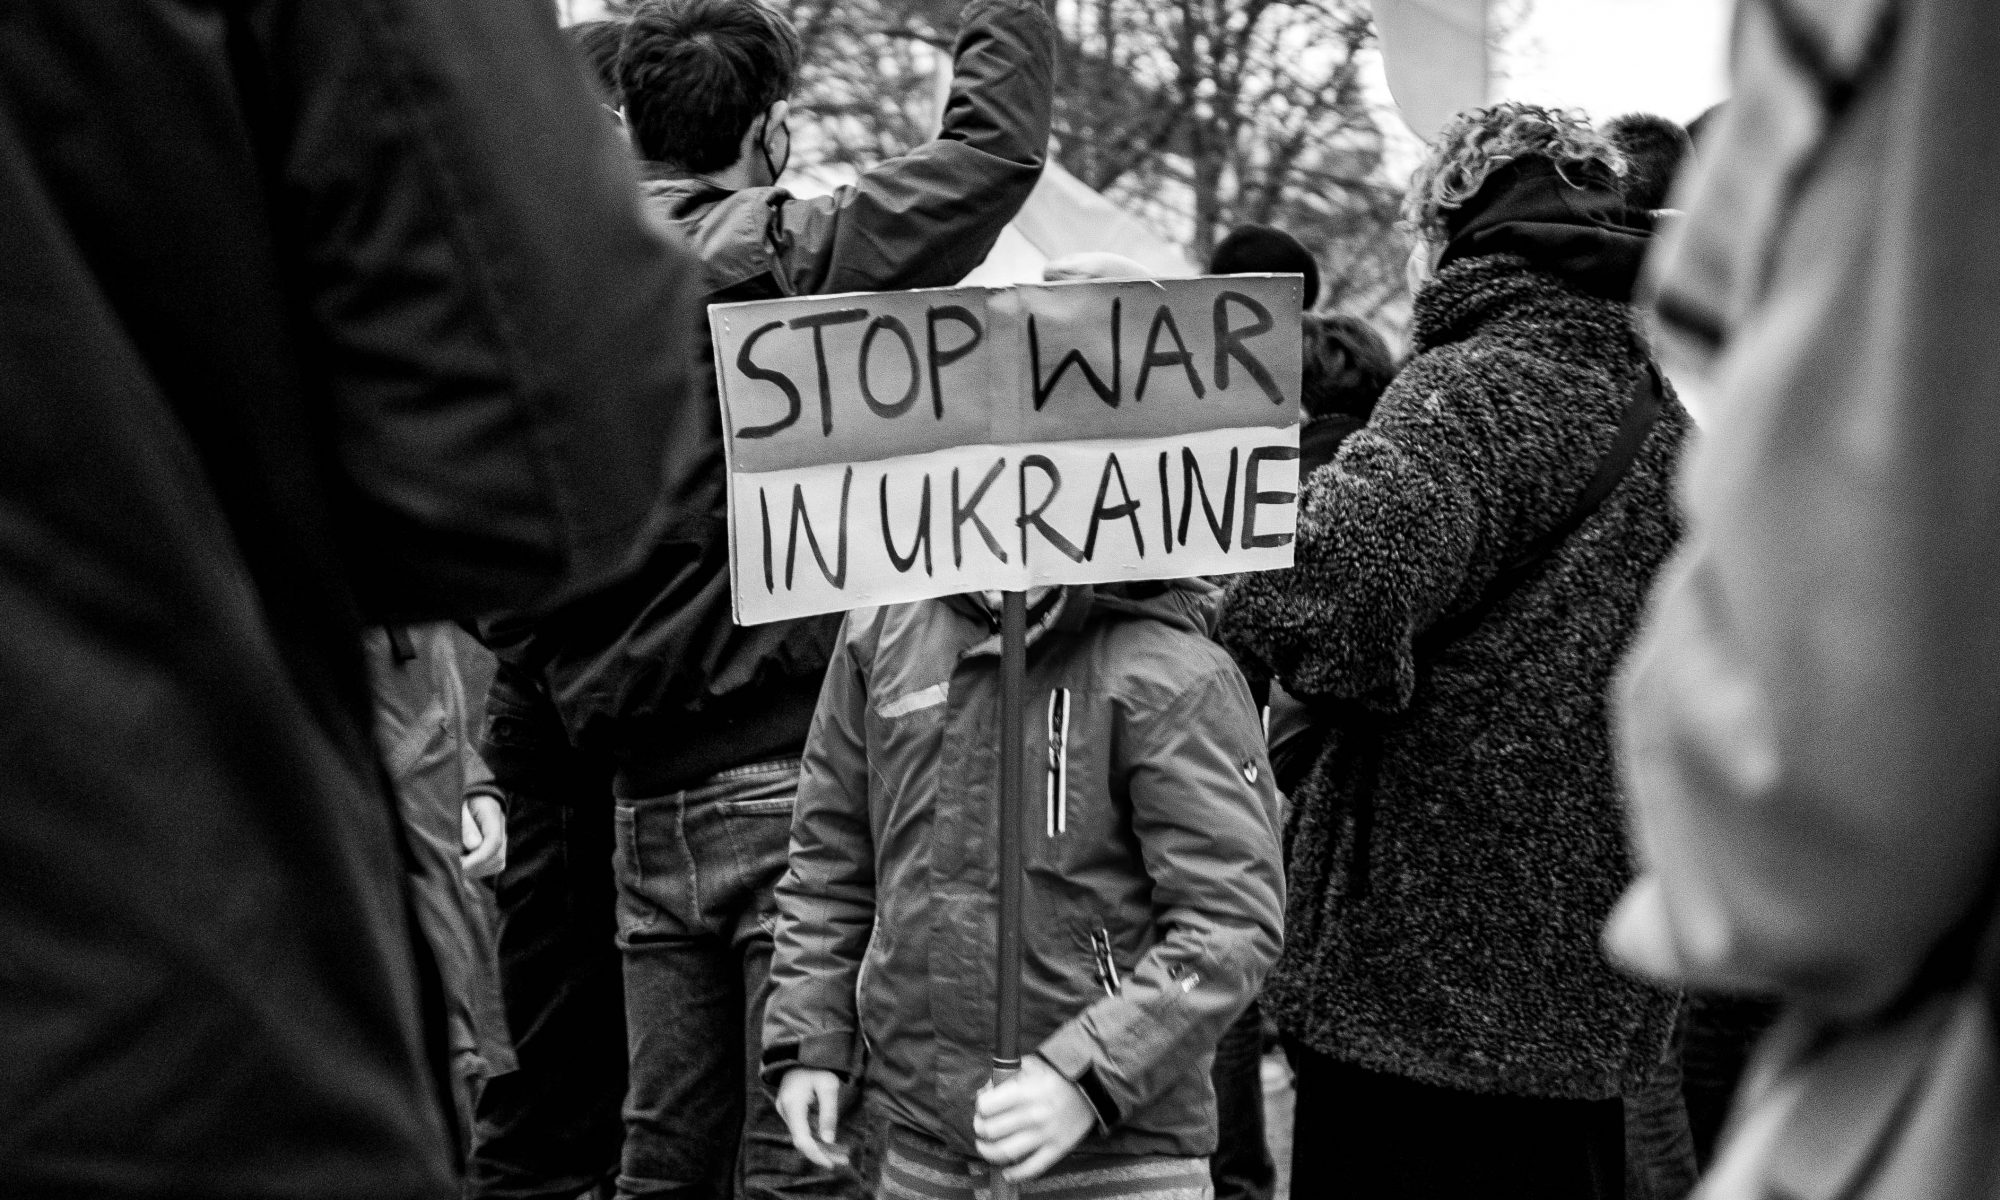 Kind hält ein Schild in der Hand: Stop war in Ukraine- Deutsch: Stoppt Krieg in der Ukraine. Das Gesicht des Kindes wird vom Schild verdeckt. Das Kind steht zwischen anderen Menschen. Das Photo ist schwarz-weiss